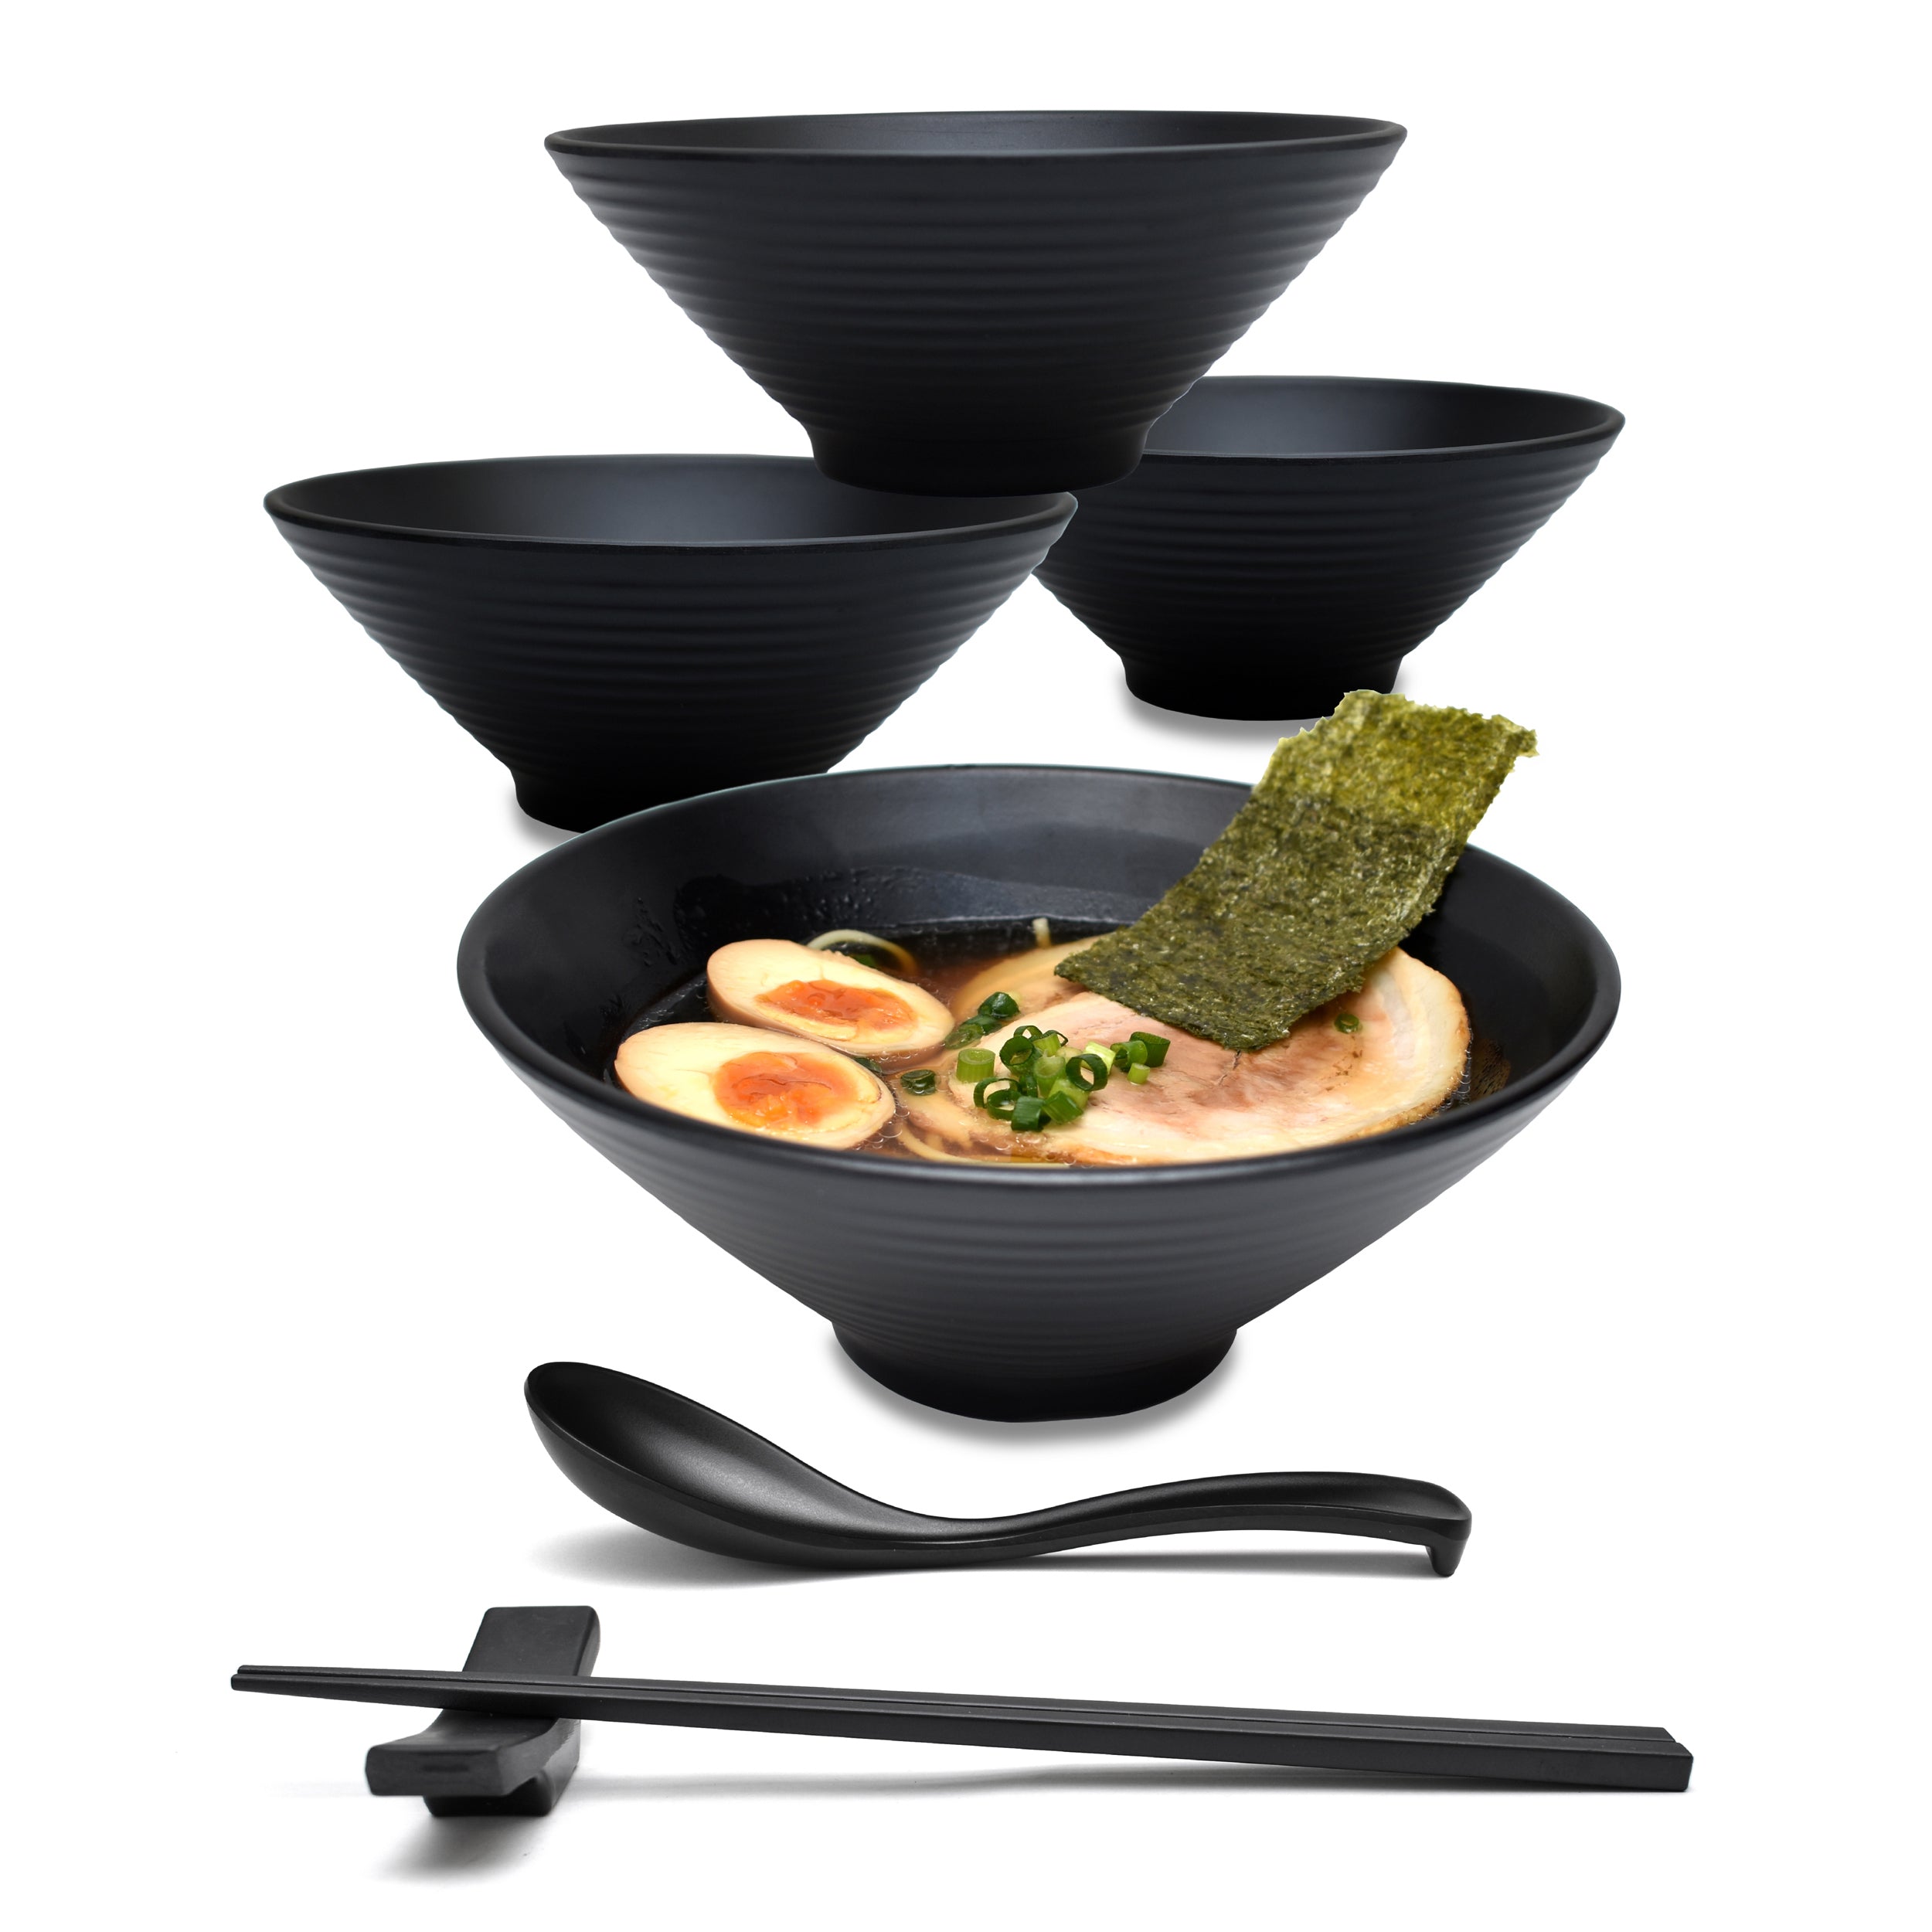 https://www.apexsk.com/cdn/shop/products/32oz_Melamine_Japanese_Ramen_Noodle_Bowl_Set_01_sq.jpg?v=1607747022